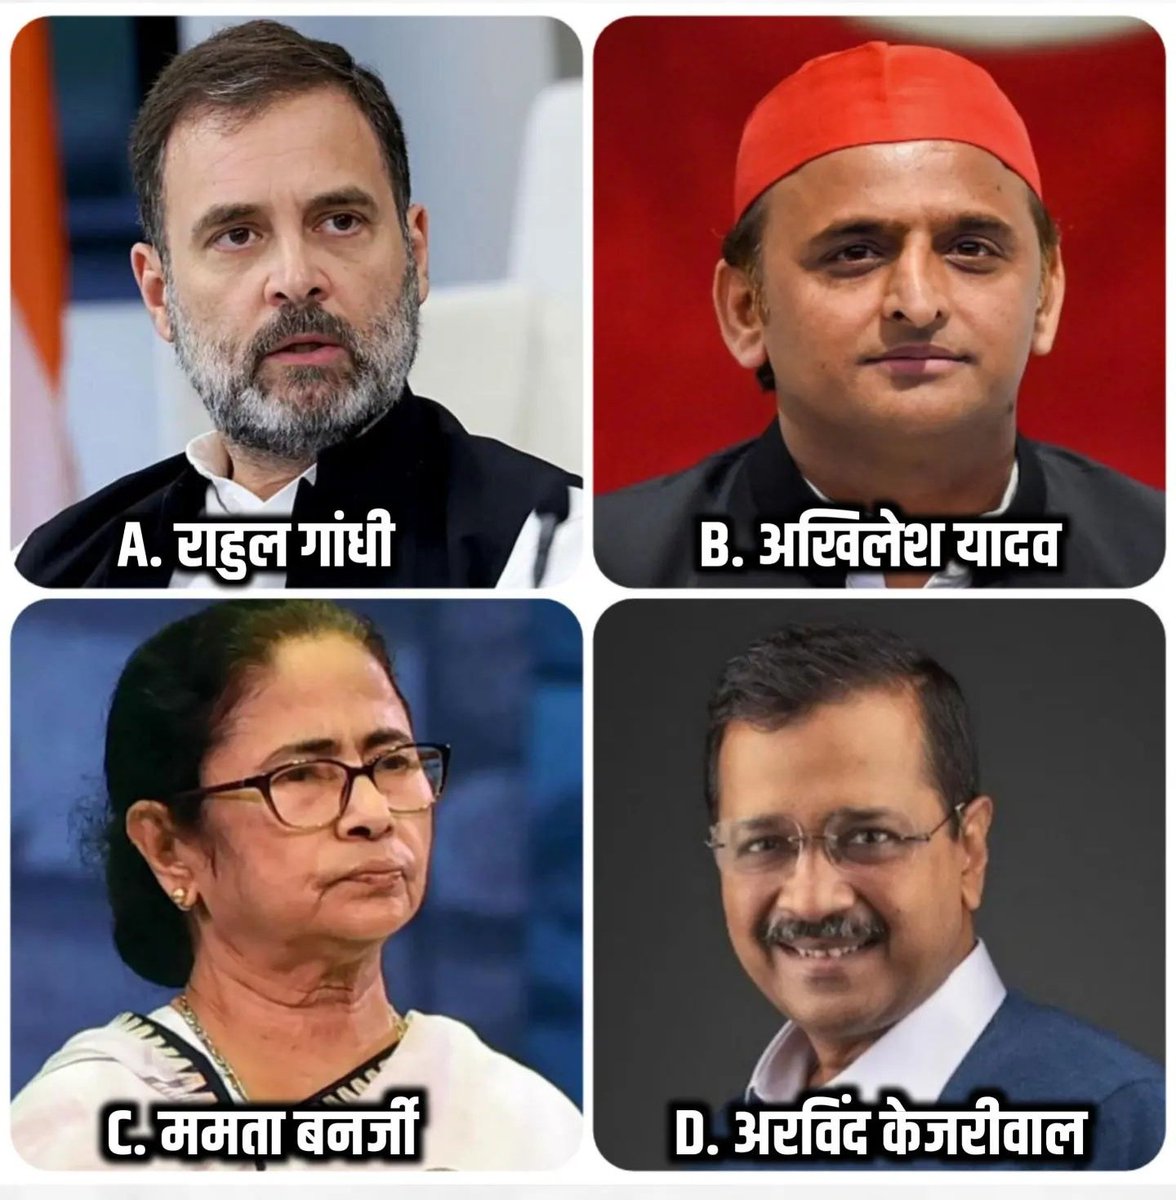 अगर INDIA गठबंधन को बहुमत मिलता है,
 तो प्रधानमंत्री पद का उम्मीदवार कौन होगा?

A) राहुल गांधी
B) अखिलेश यादव 
C) ममता बनर्जी 
D) अरविंद केजरीवाल 

मेरी पसंद राहुल गांधी 
जी बाकि आप बताए? 
#RahulGandhiForPM
#HaathBadlegaHalaath